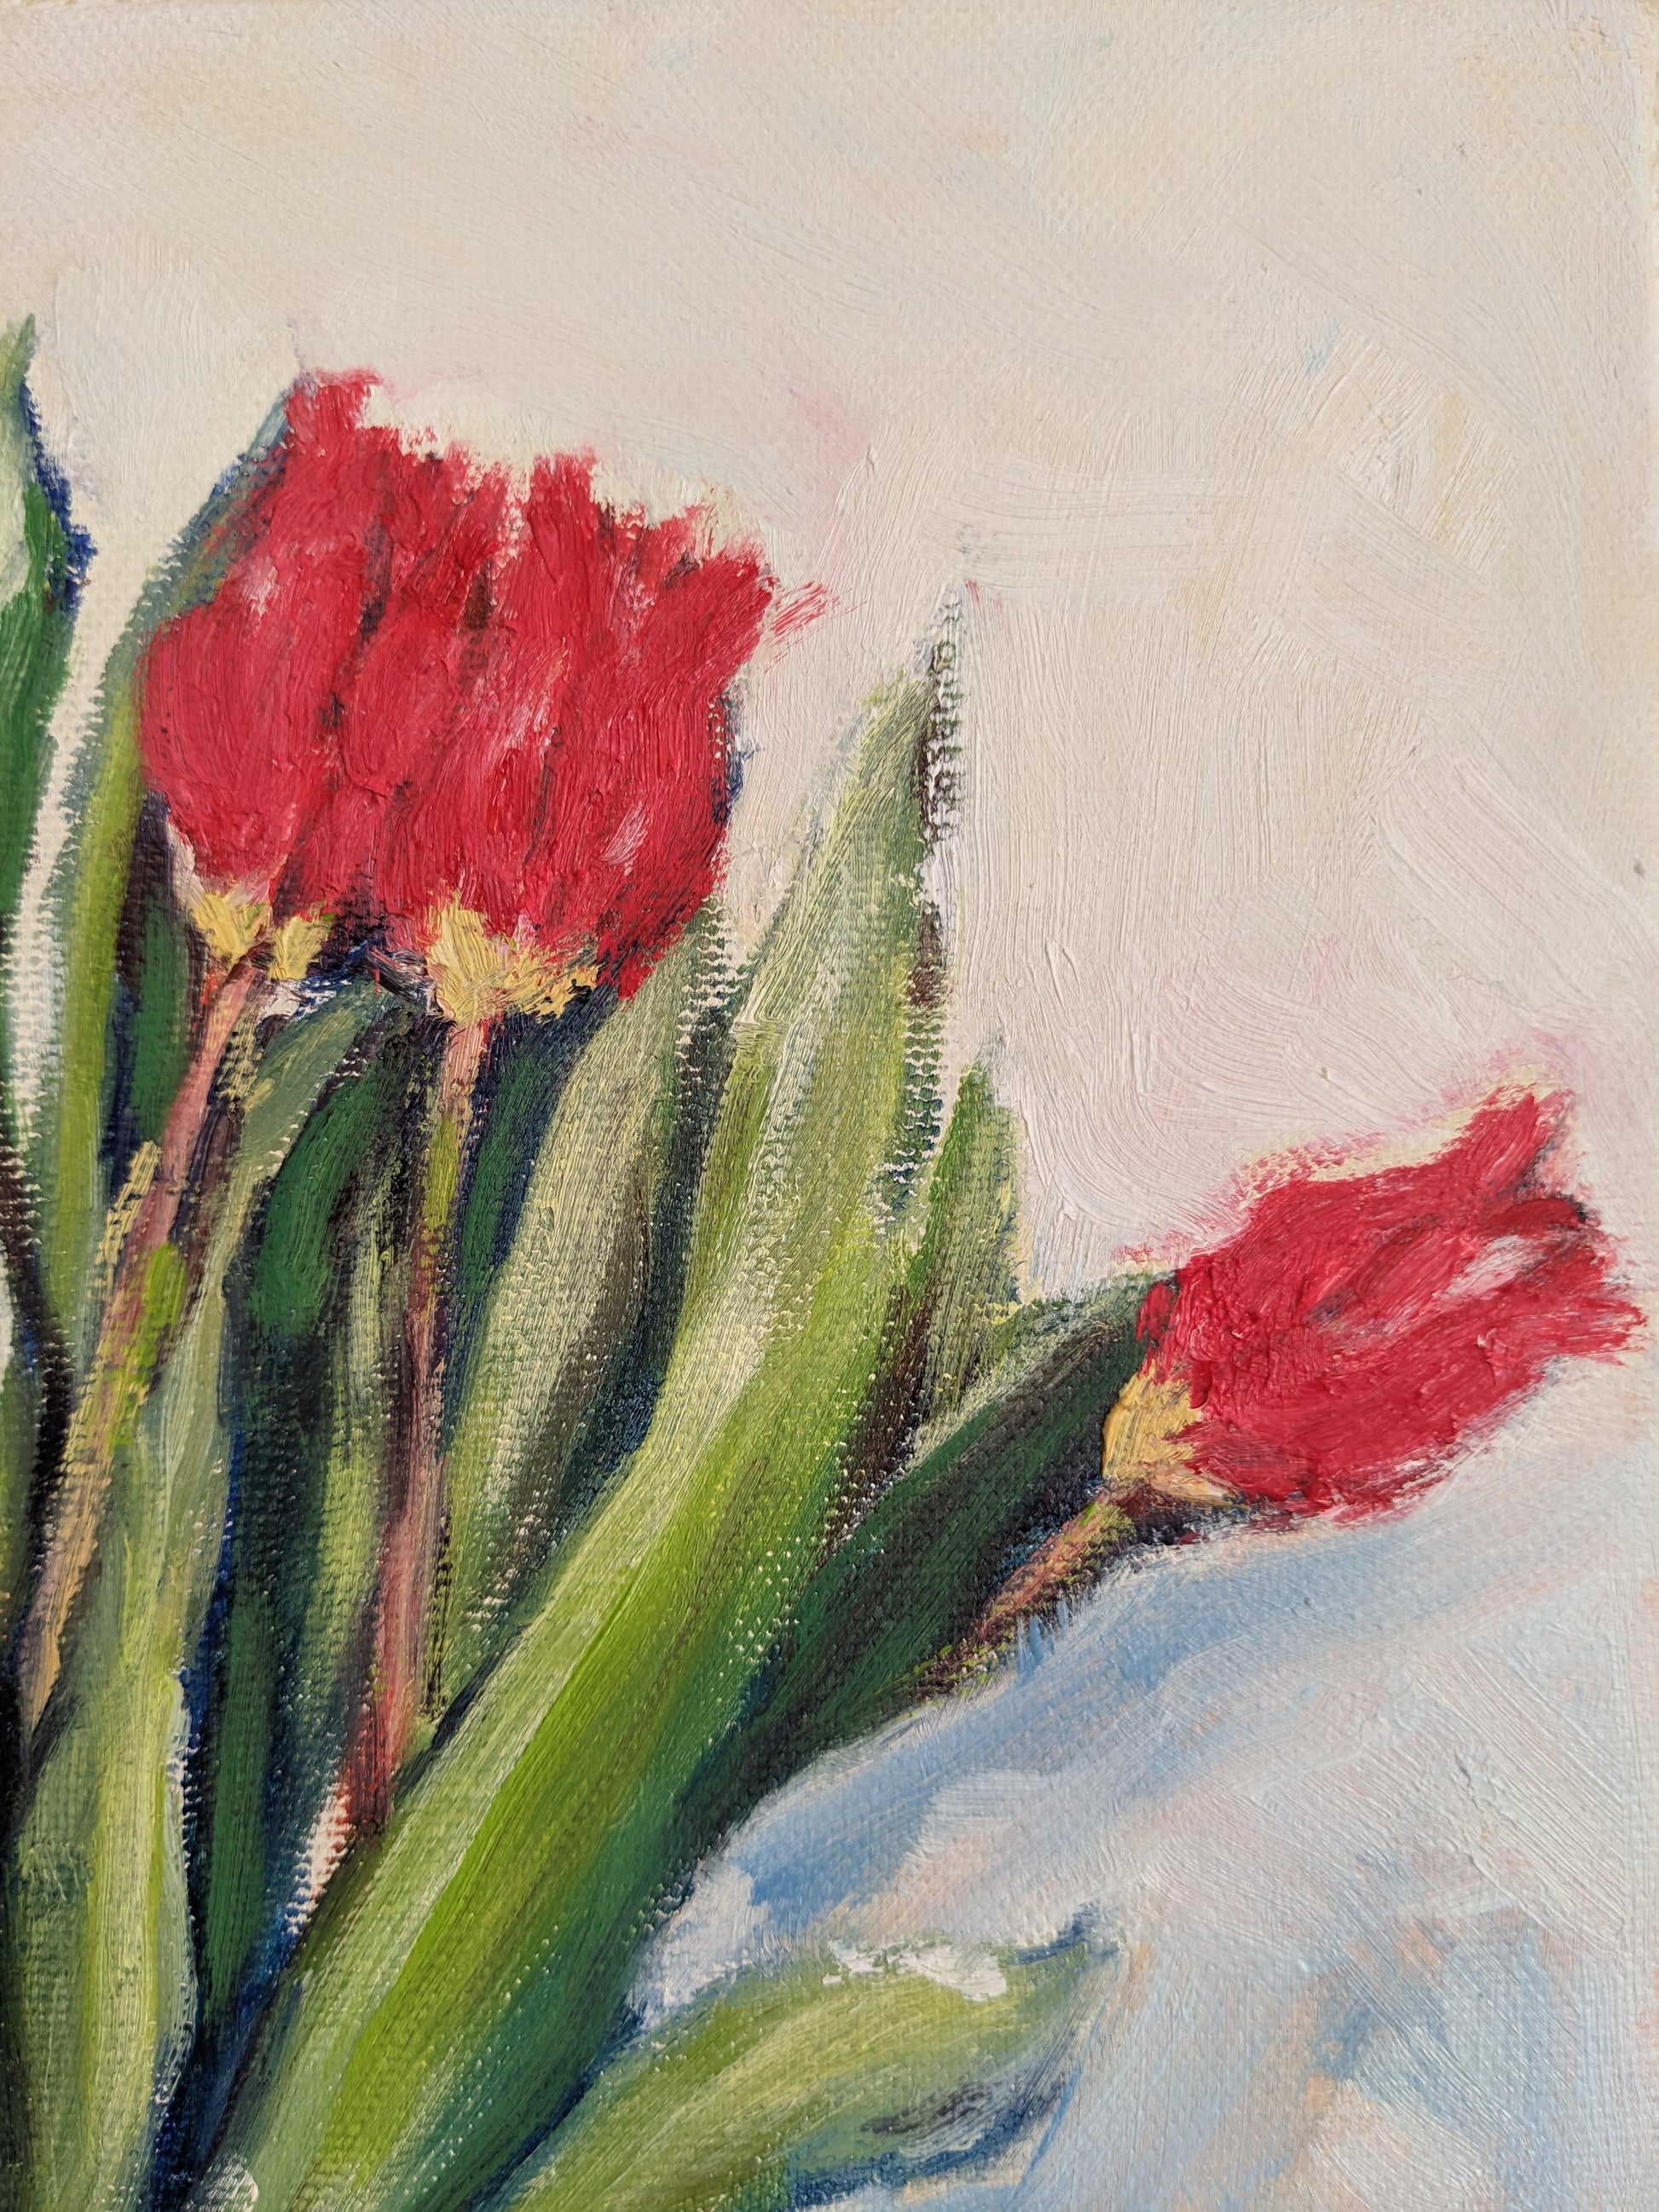 『先取りのチューリップ(Tulips before the season)』 - FROM ARTIST